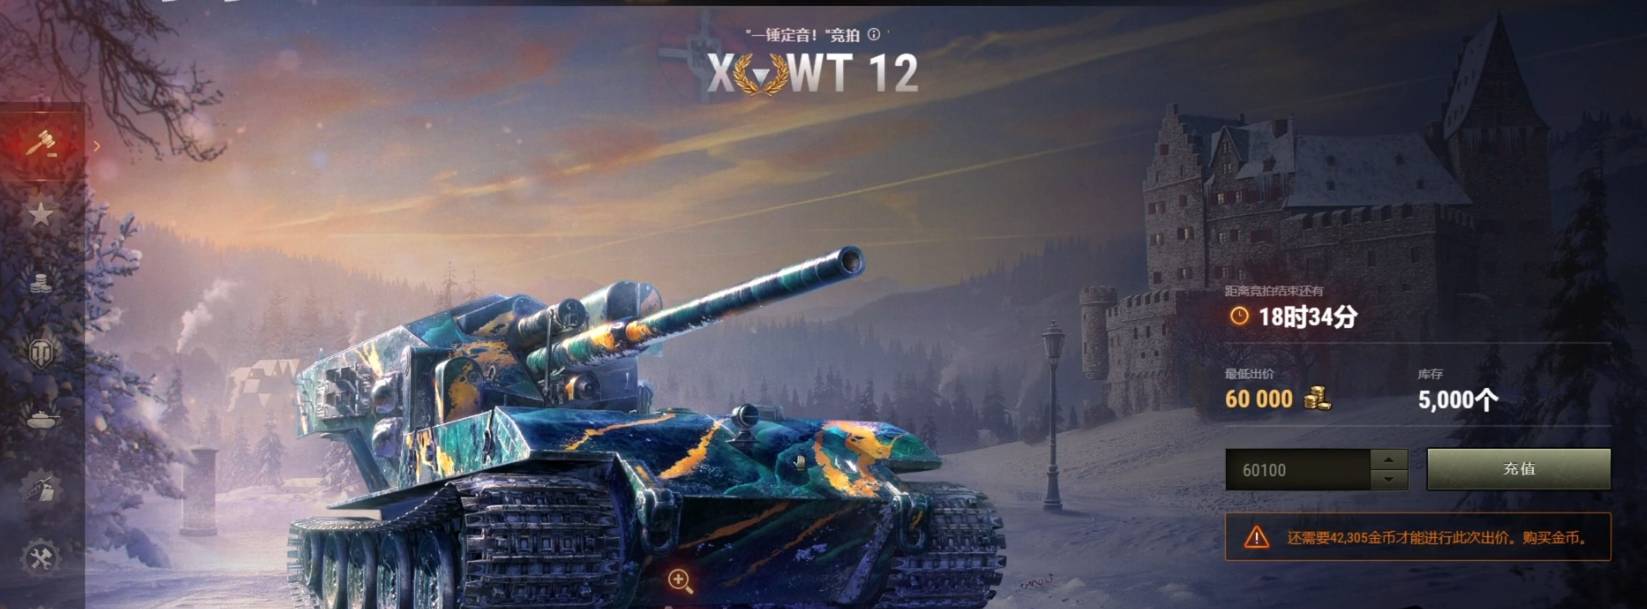 坦克世界wt100百运怎么获得?坦克世界wt100百运获得攻略